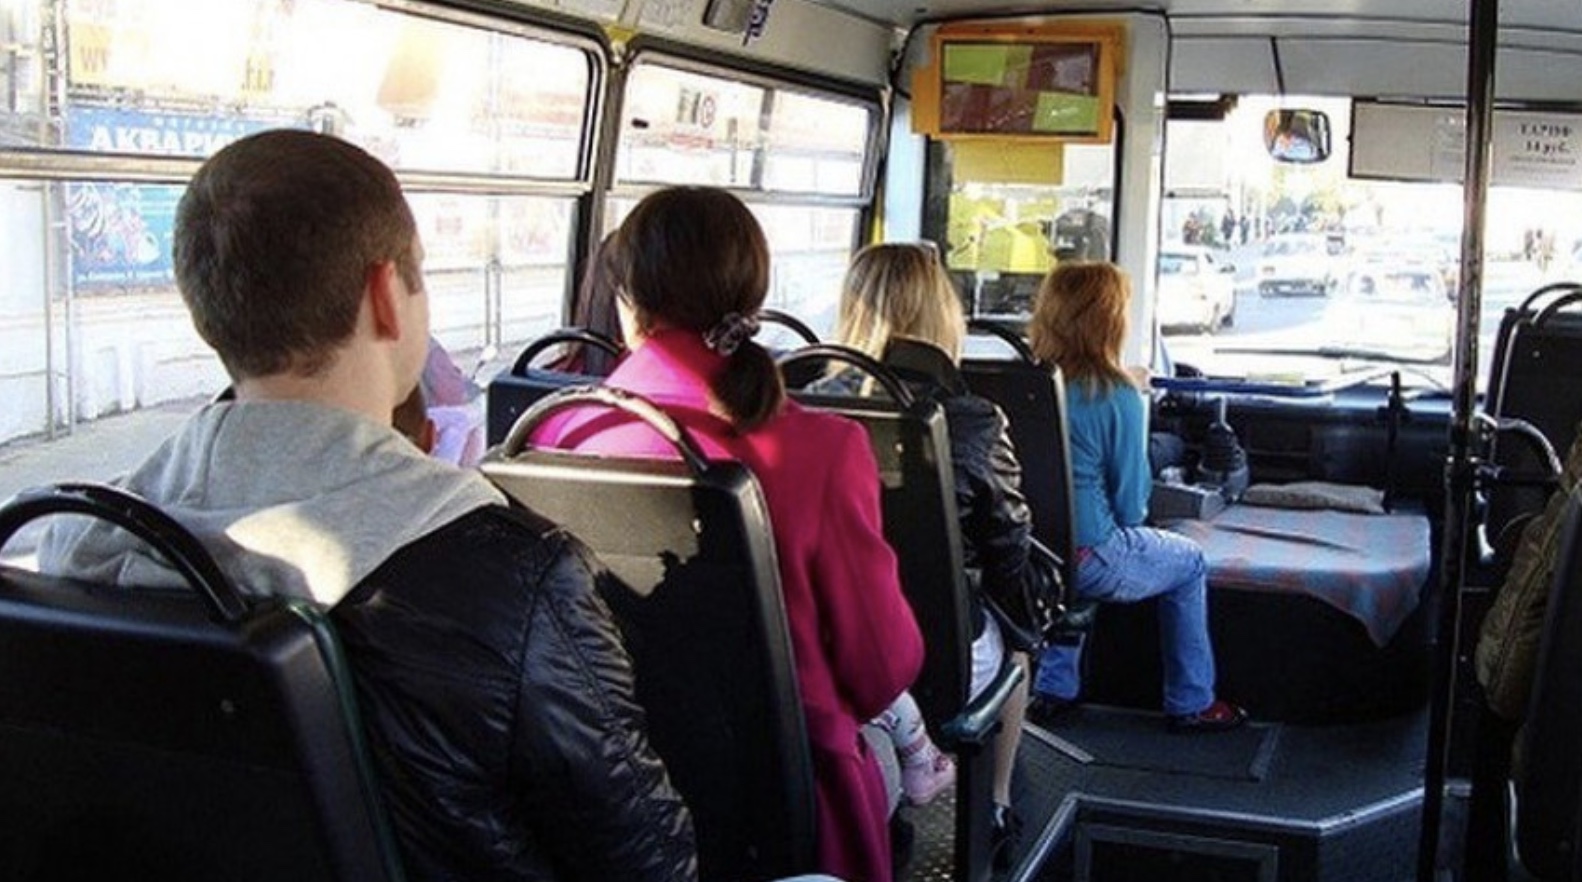 Пассажиры с детьми в автобусе. Салон автобуса с пассажирами. Пассажиры в маршрутке. Салон автобуса с людьми. Пассажиры в ПАЗИКЕ.